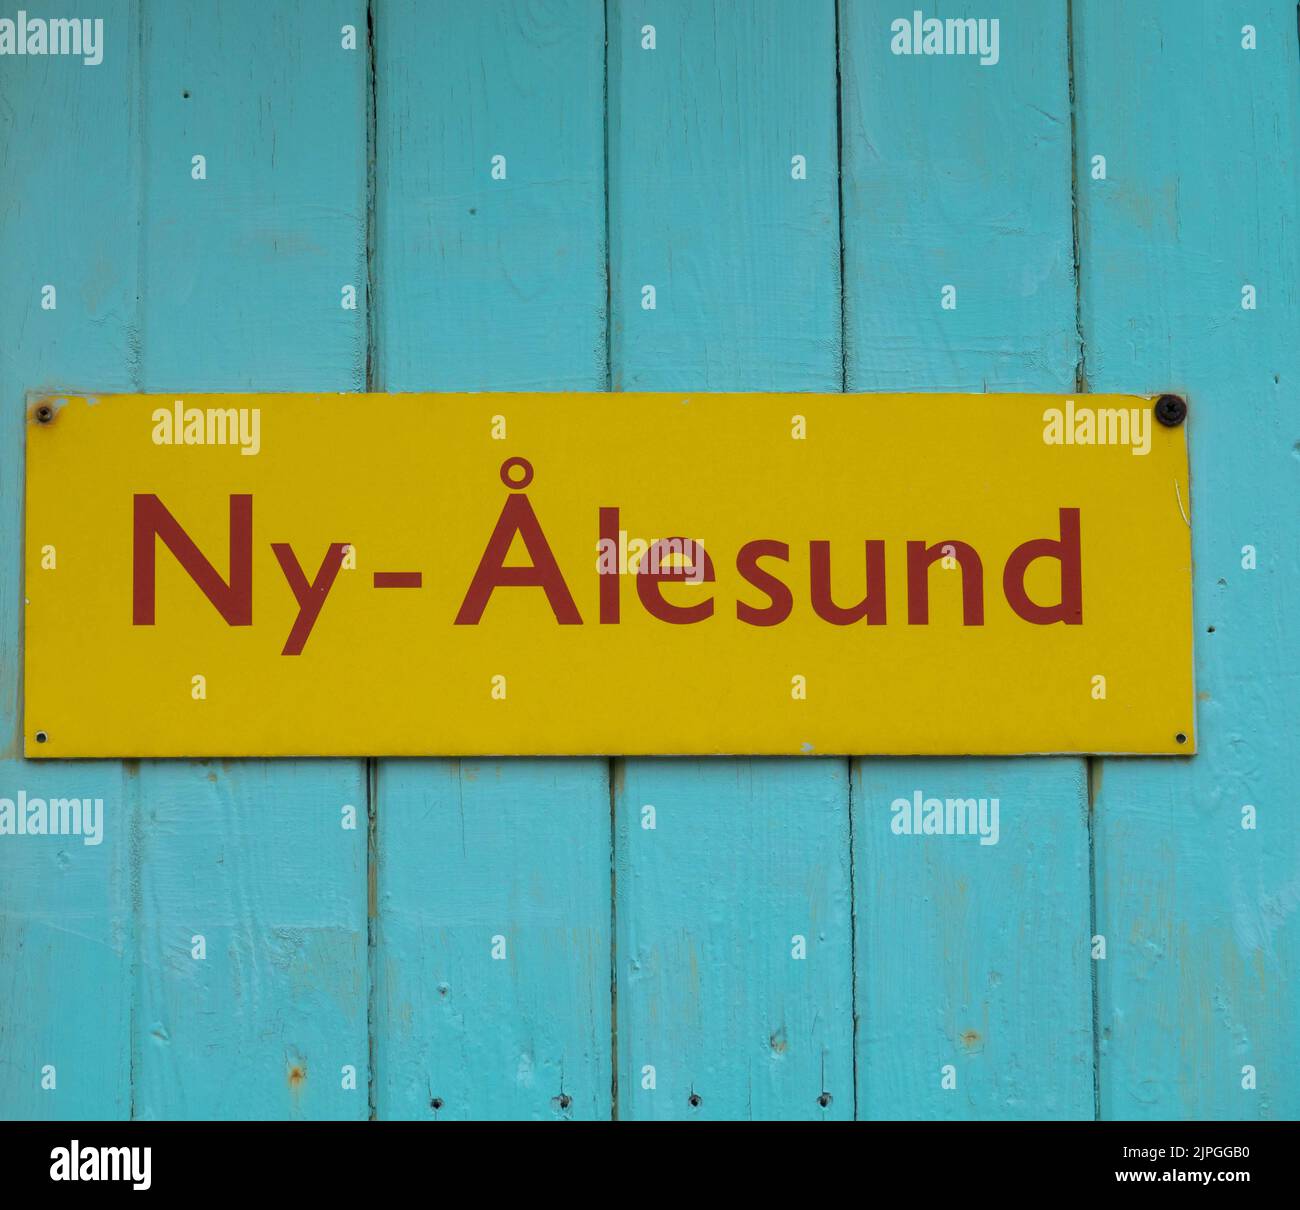 Panneau jaune NY-Alesund. Gros plan. Concept de tourisme et de vacances. Svalbard, Norvège. Banque D'Images